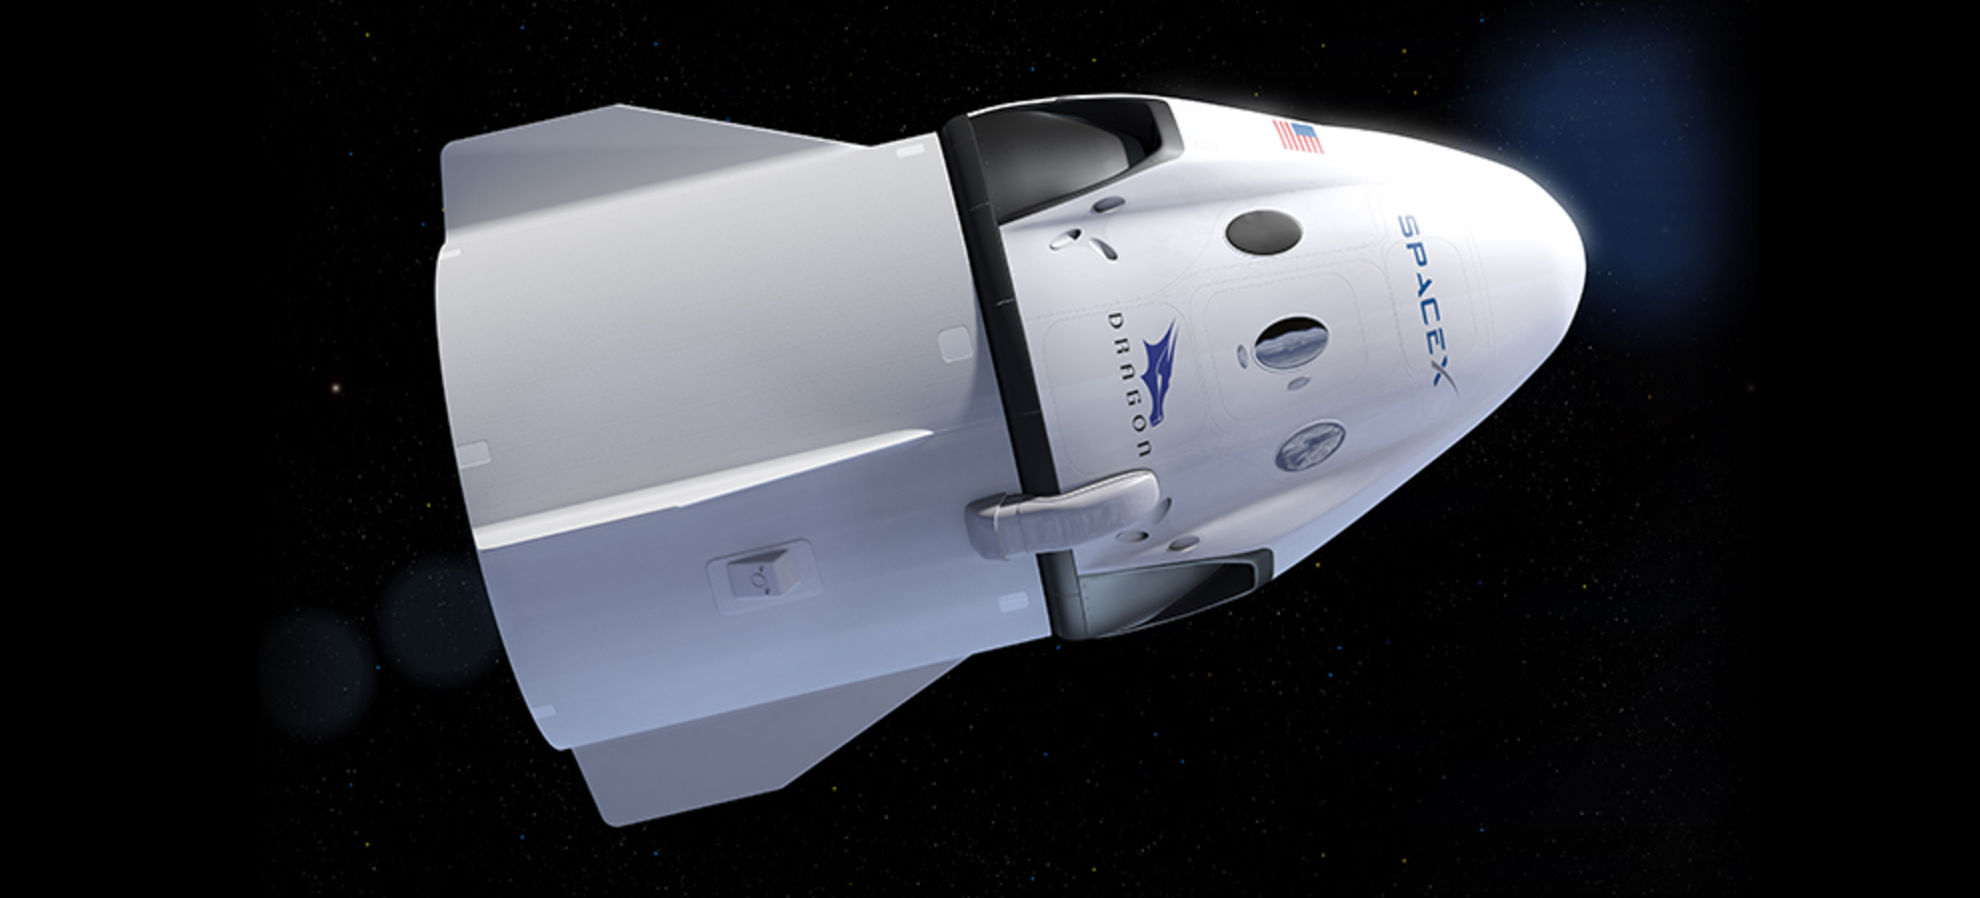 ستقوم SpaceX بأول رحلة مأهولة إلى محطة الفضاء الدولية في مايو 55